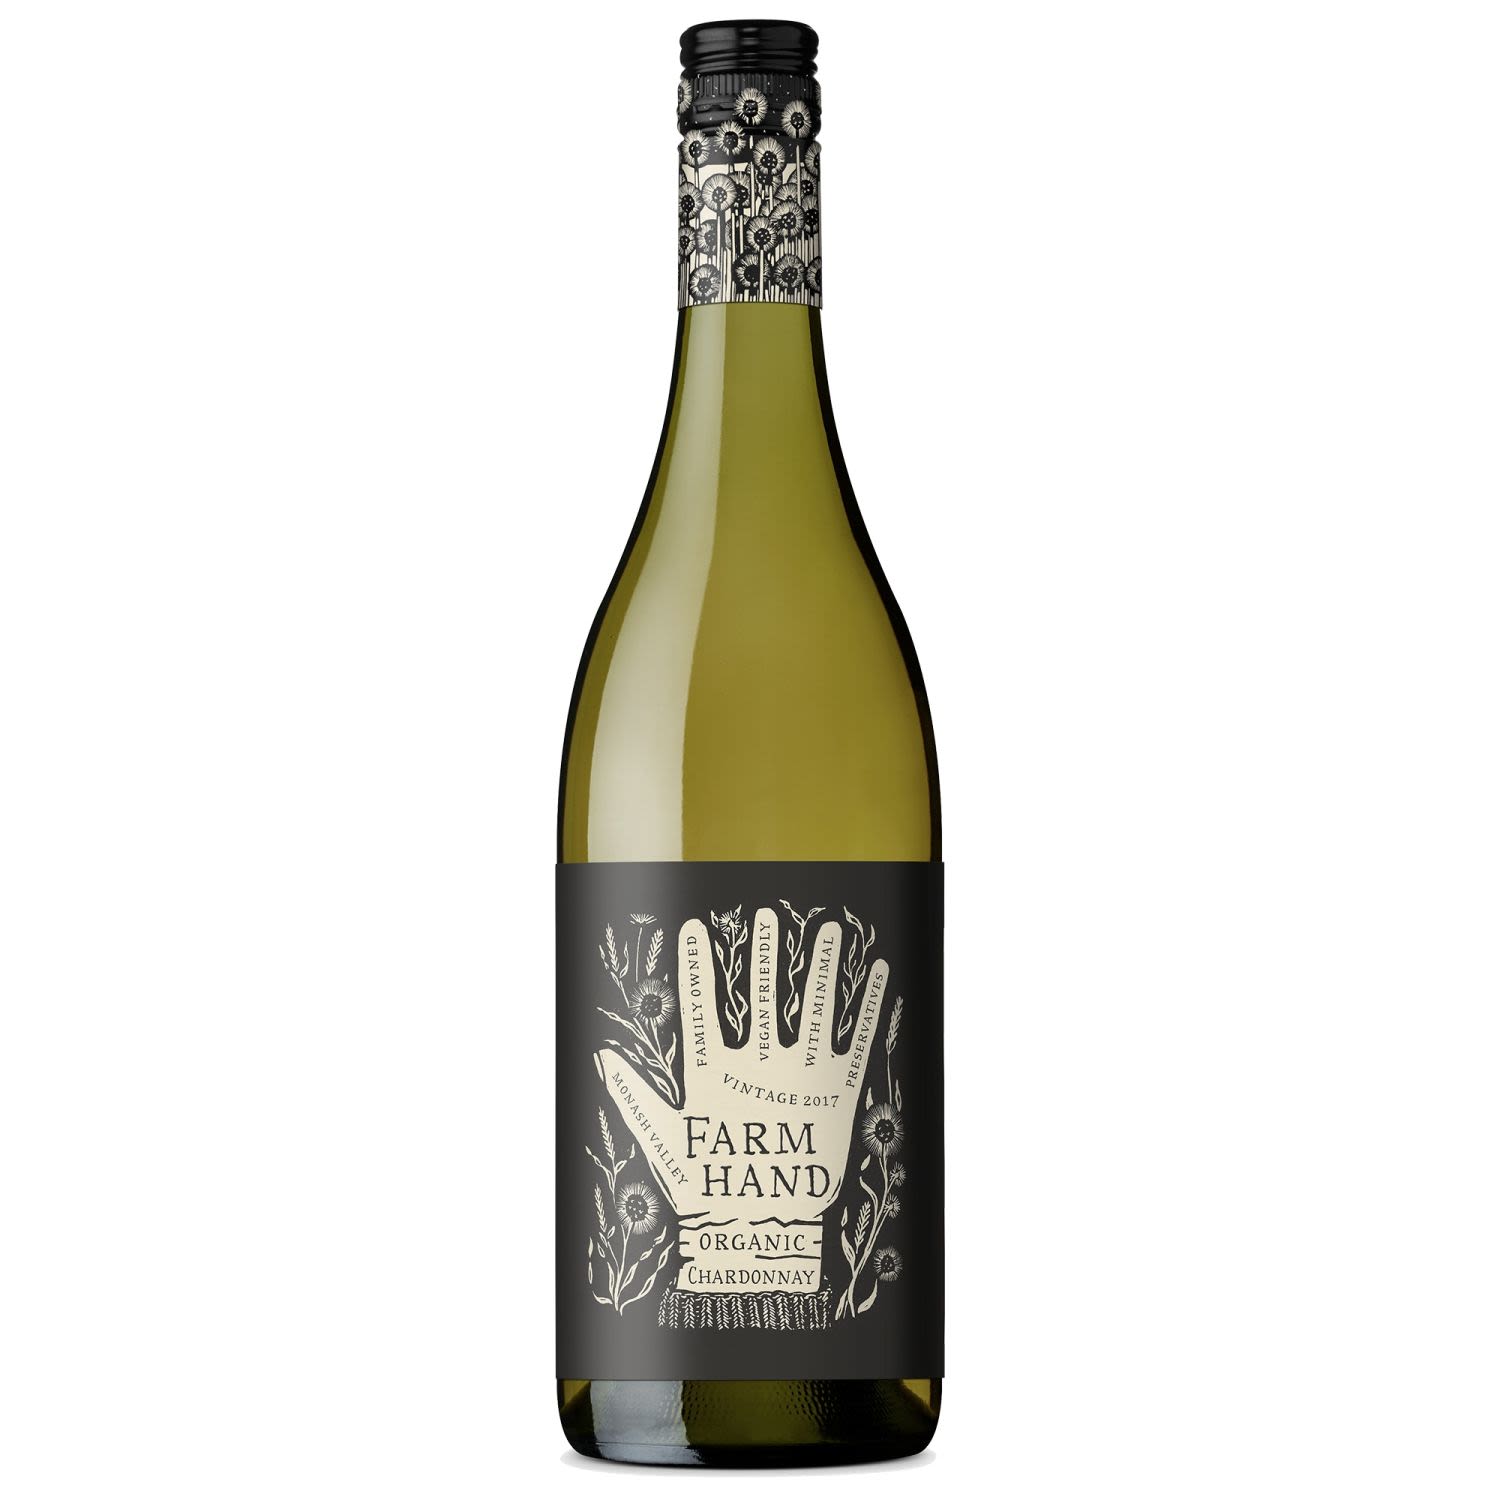 Farm Hand Organic Chardonnay<br /> <br />Alcohol Volume: 12.50%<br /><br />Pack Format: Bottle<br /><br />Standard Drinks: 7.4</br /><br />Pack Type: Bottle<br /><br />Country of Origin: Australia<br /><br />Region: Monash Valley<br /><br />Vintage: '2018<br />